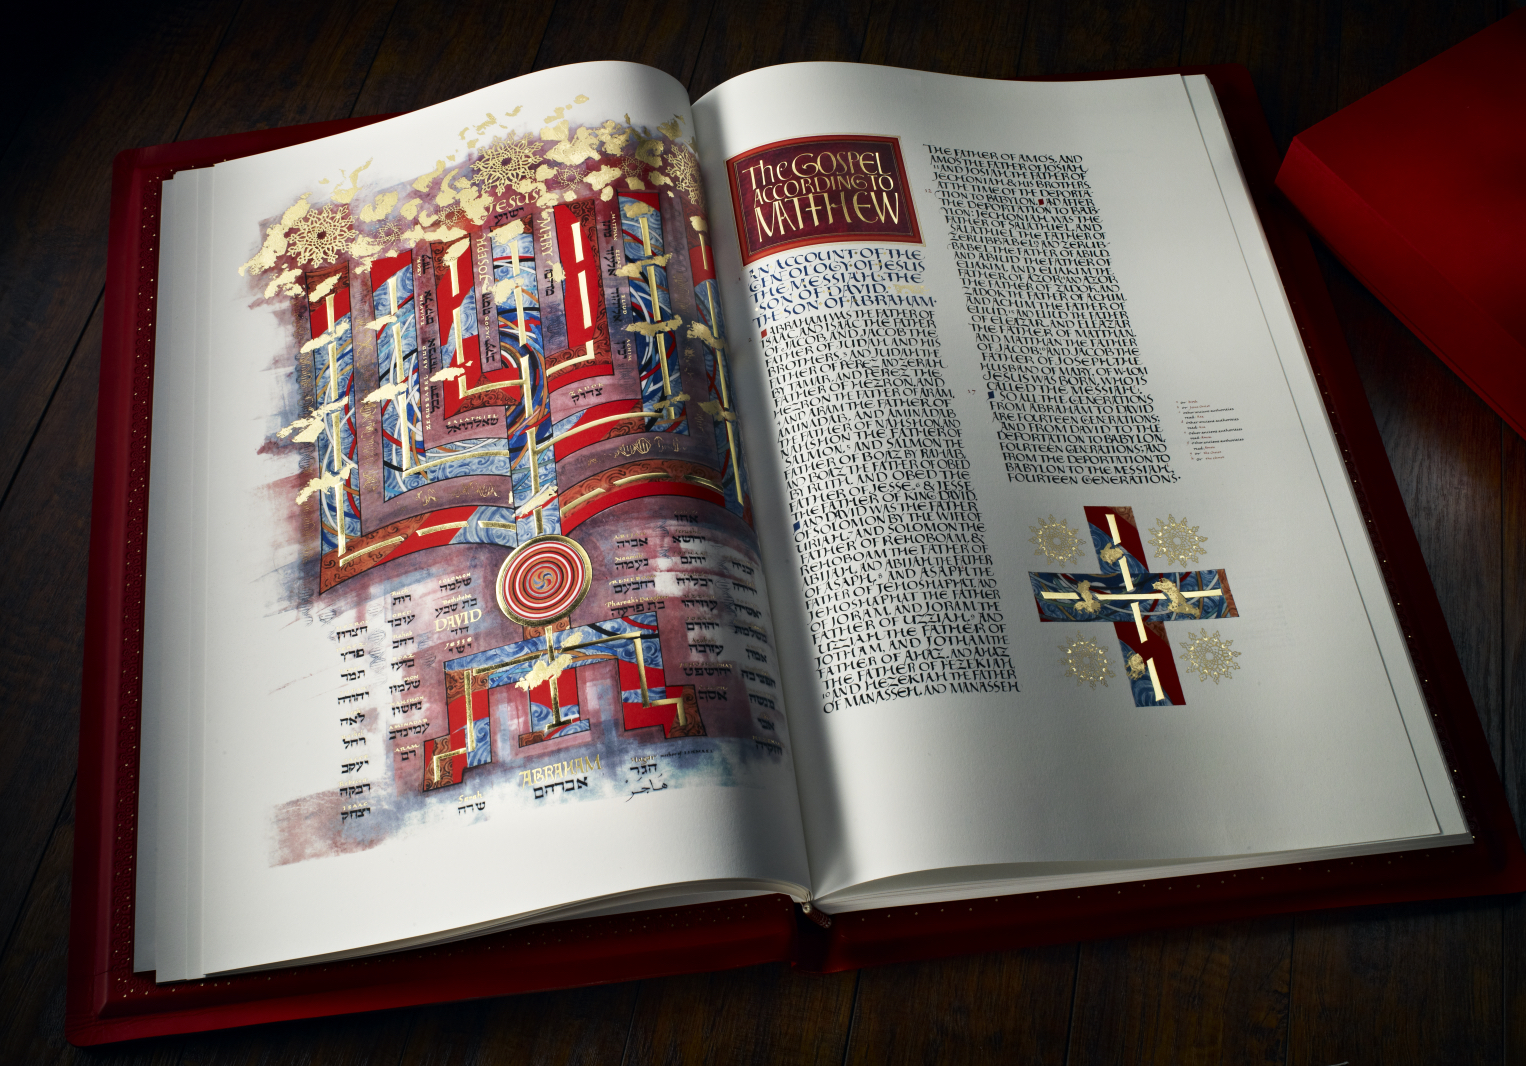 The Saint John's Bible, "Book of Matthew" illumination 